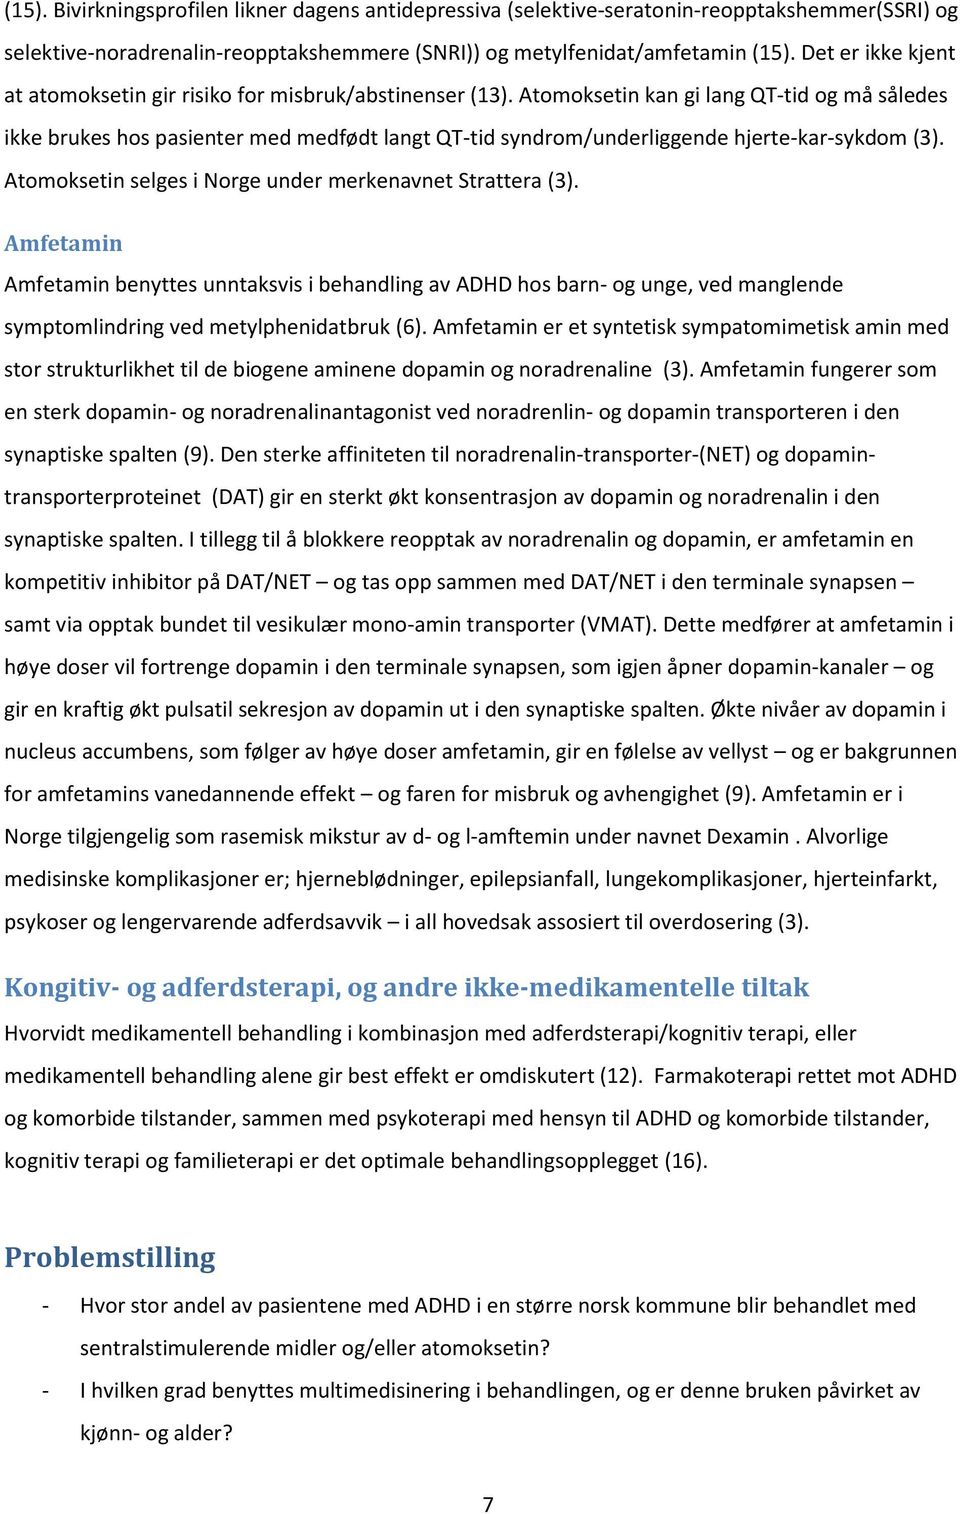 Atomoksetin kan gi lang QT-tid og må således ikke brukes hos pasienter med medfødt langt QT-tid syndrom/underliggende hjerte-kar-sykdom (3). Atomoksetin selges i Norge under merkenavnet Strattera (3).